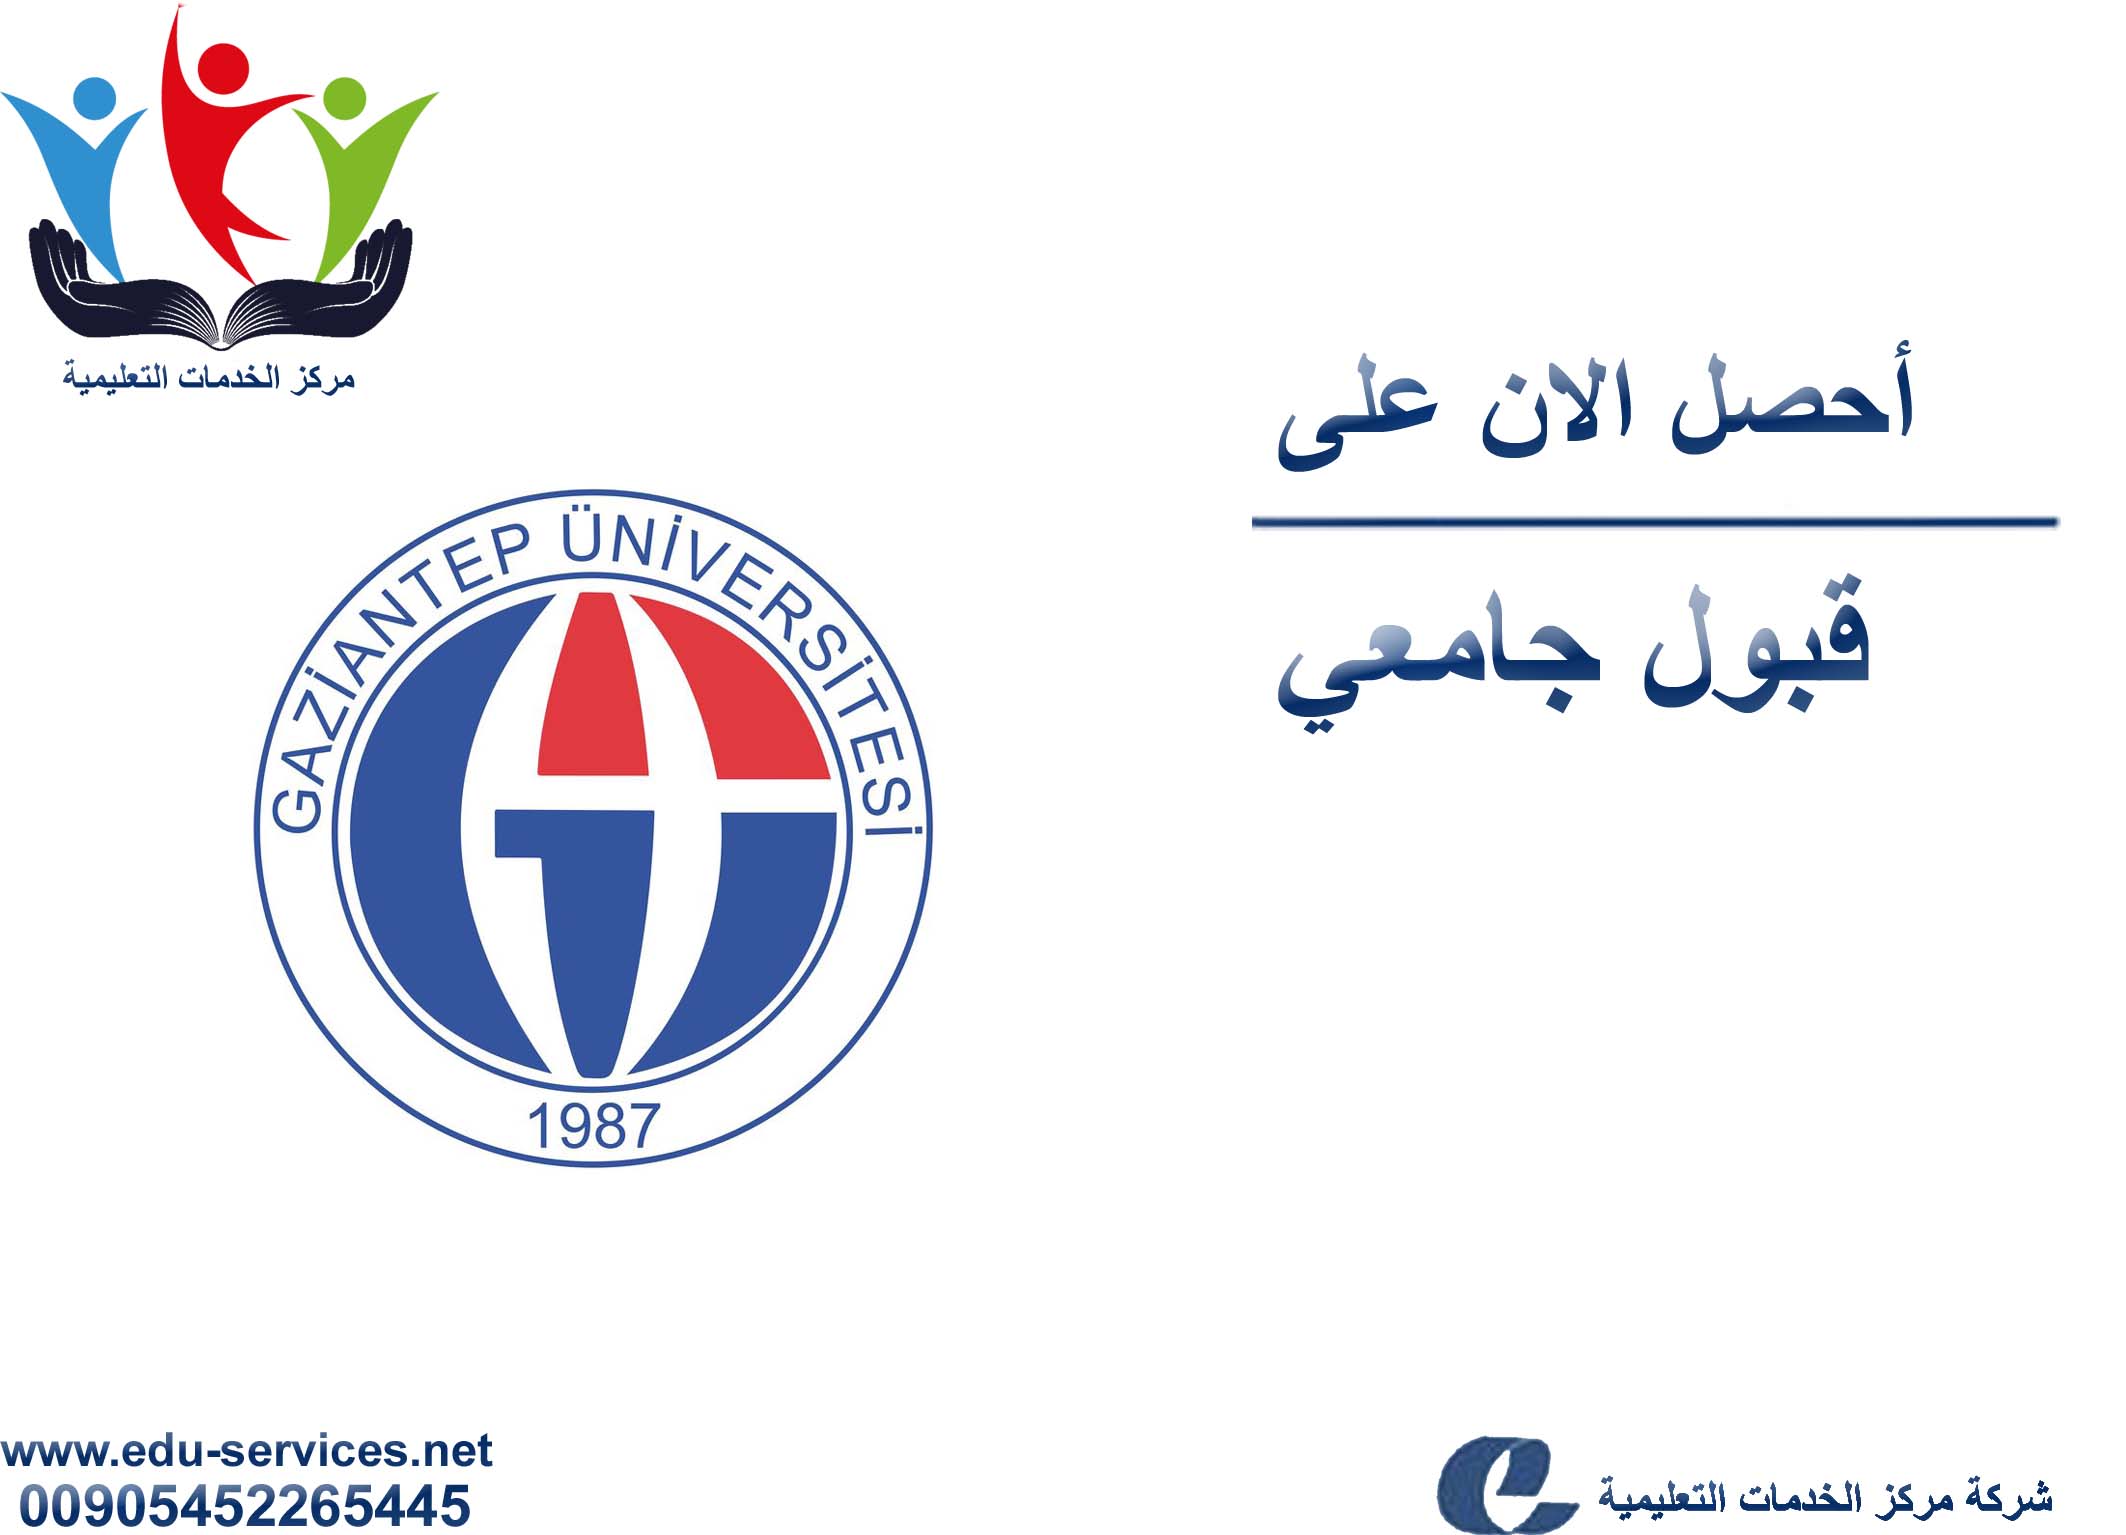 افتتاح التسجيل على جامعة غازي عنتاب لبرنامج الدراسات العليا للعام 2018-2019